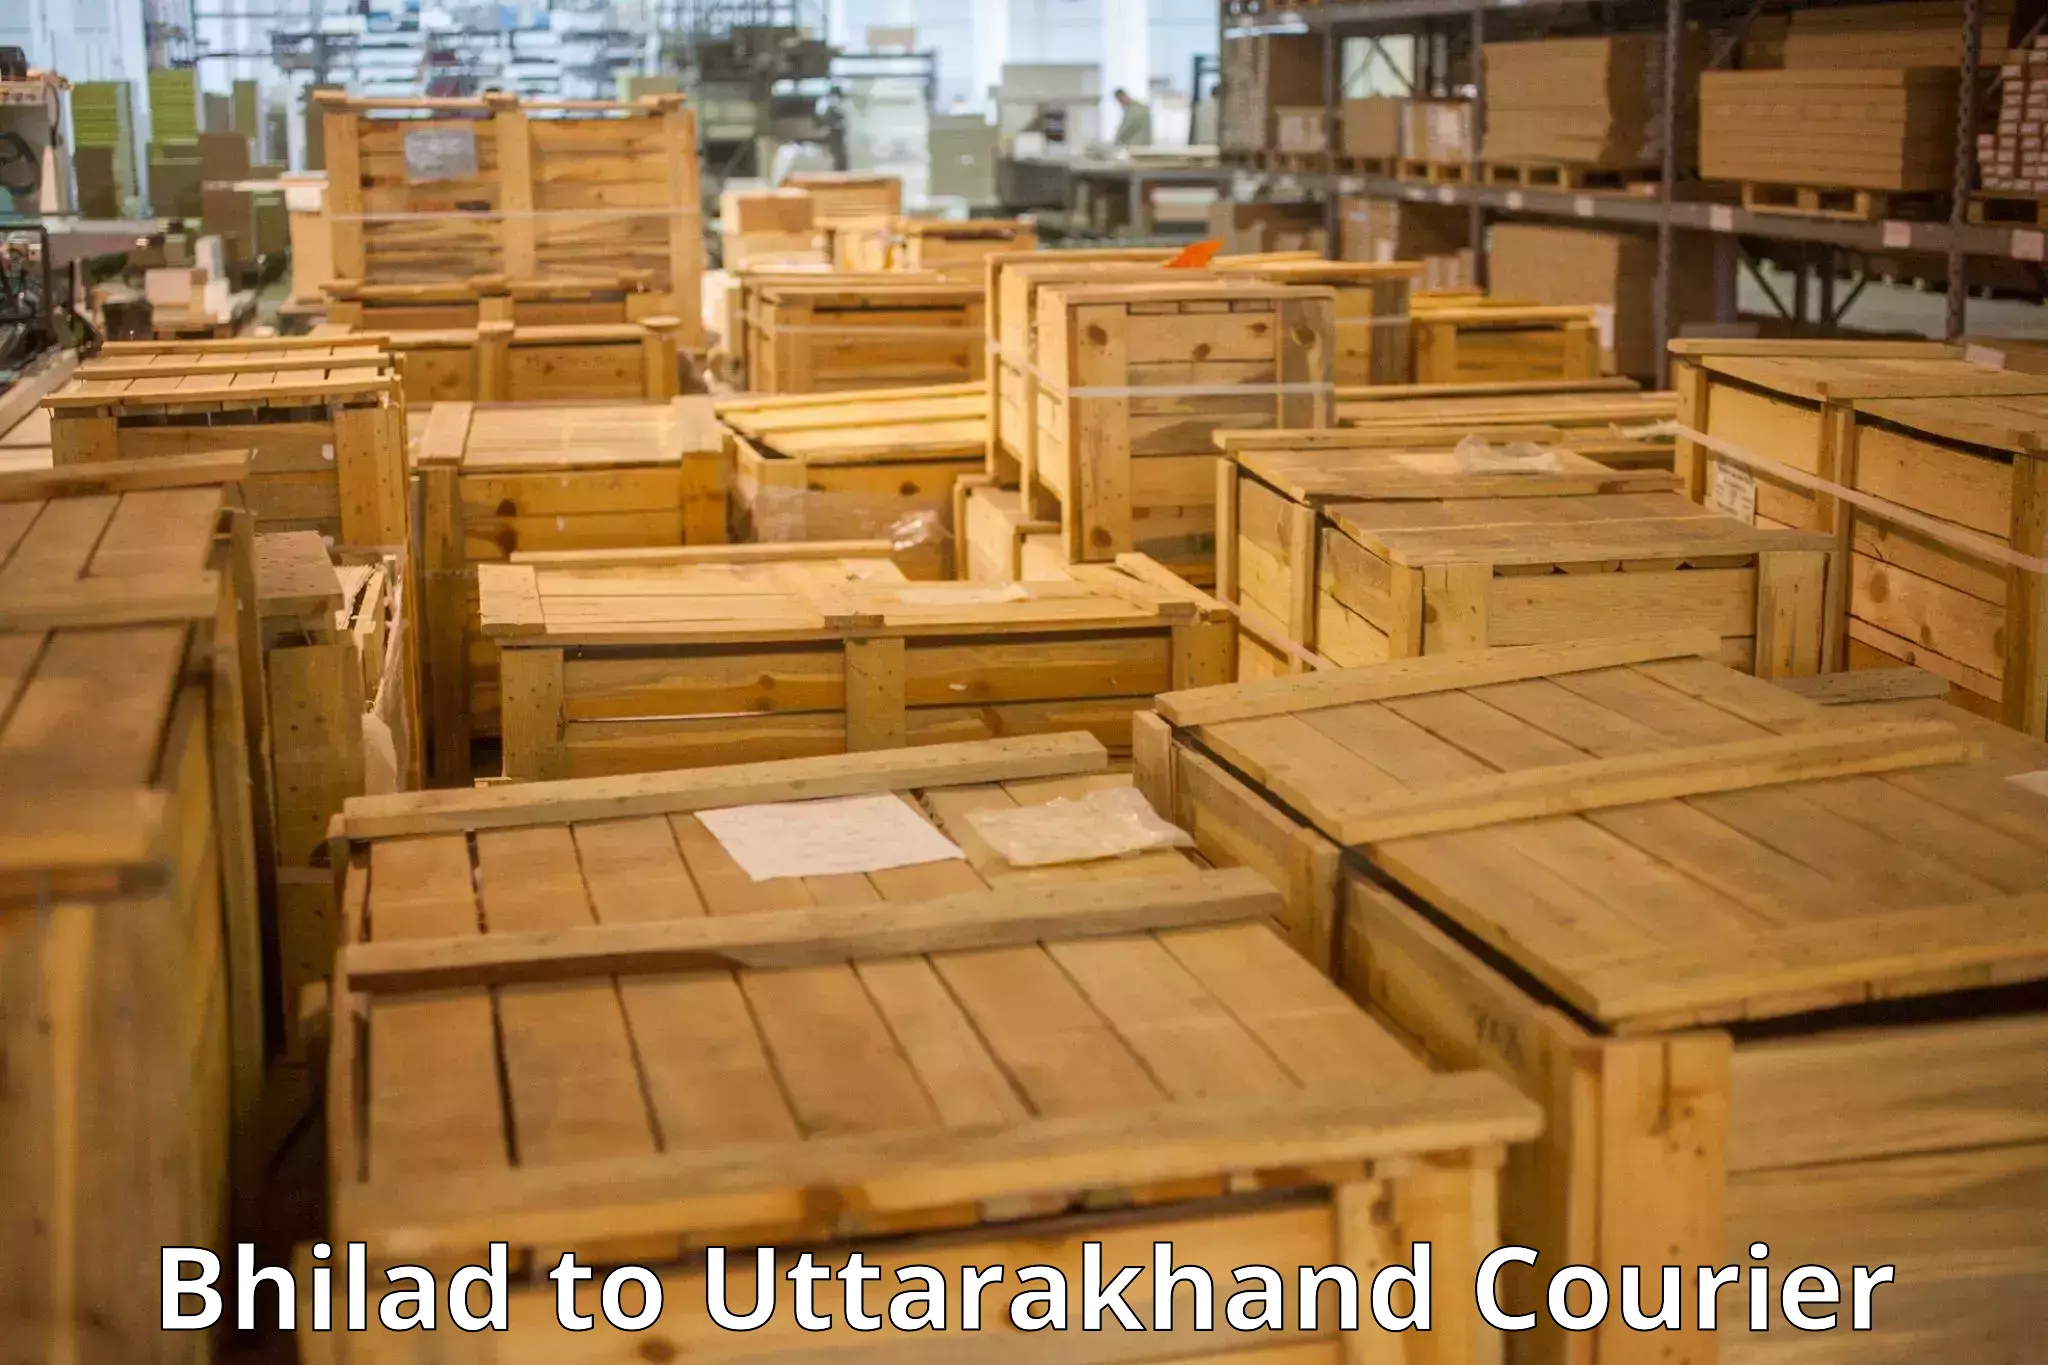 Luggage transport company Bhilad to Uttarakhand